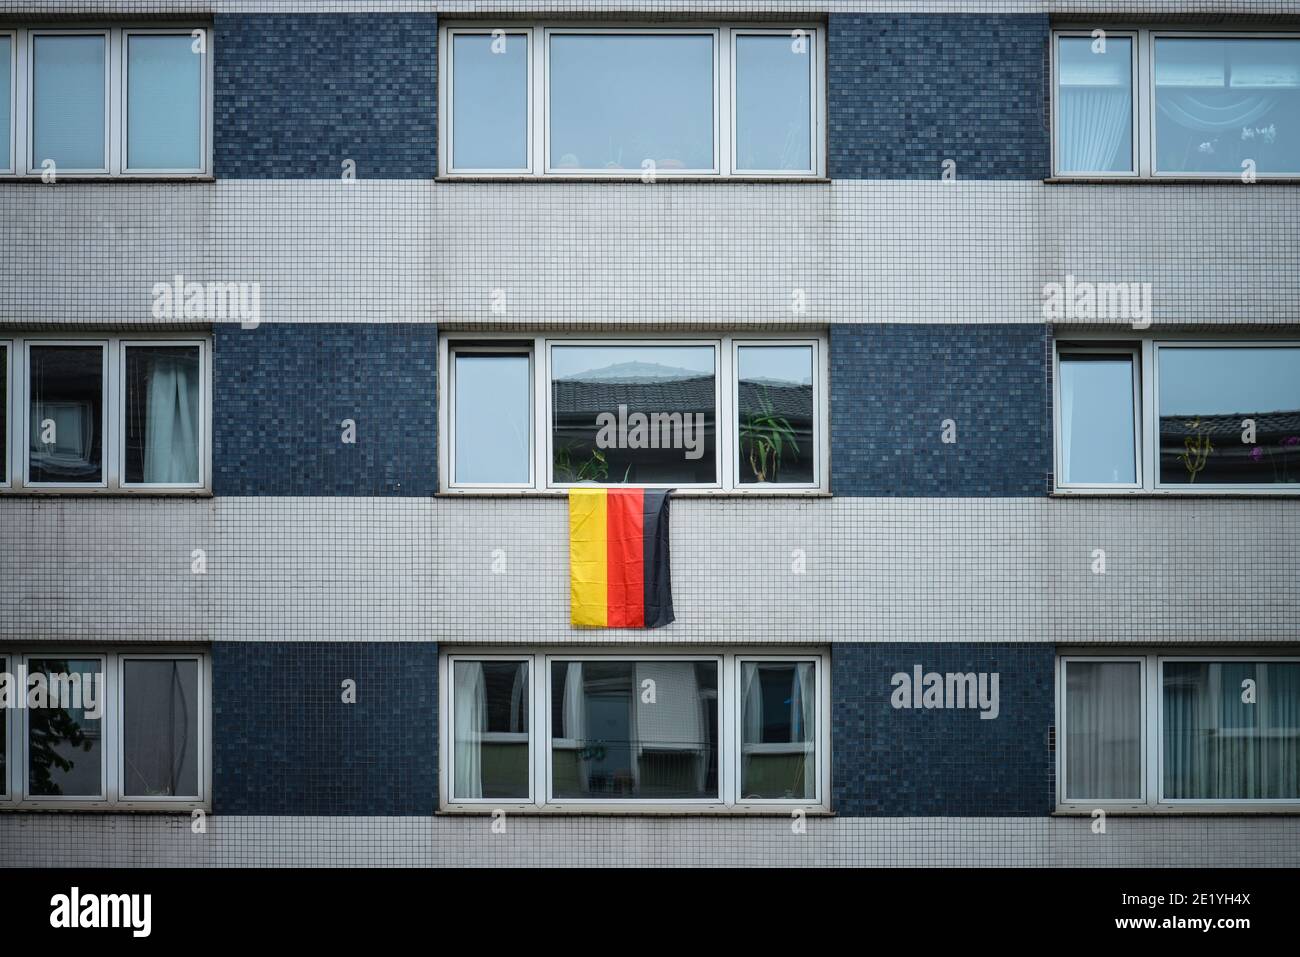 Deutschland-Fahne, Belgisches Viertel, Koeln, Nordrhein-Westfalen, Deutschland Stock Photo